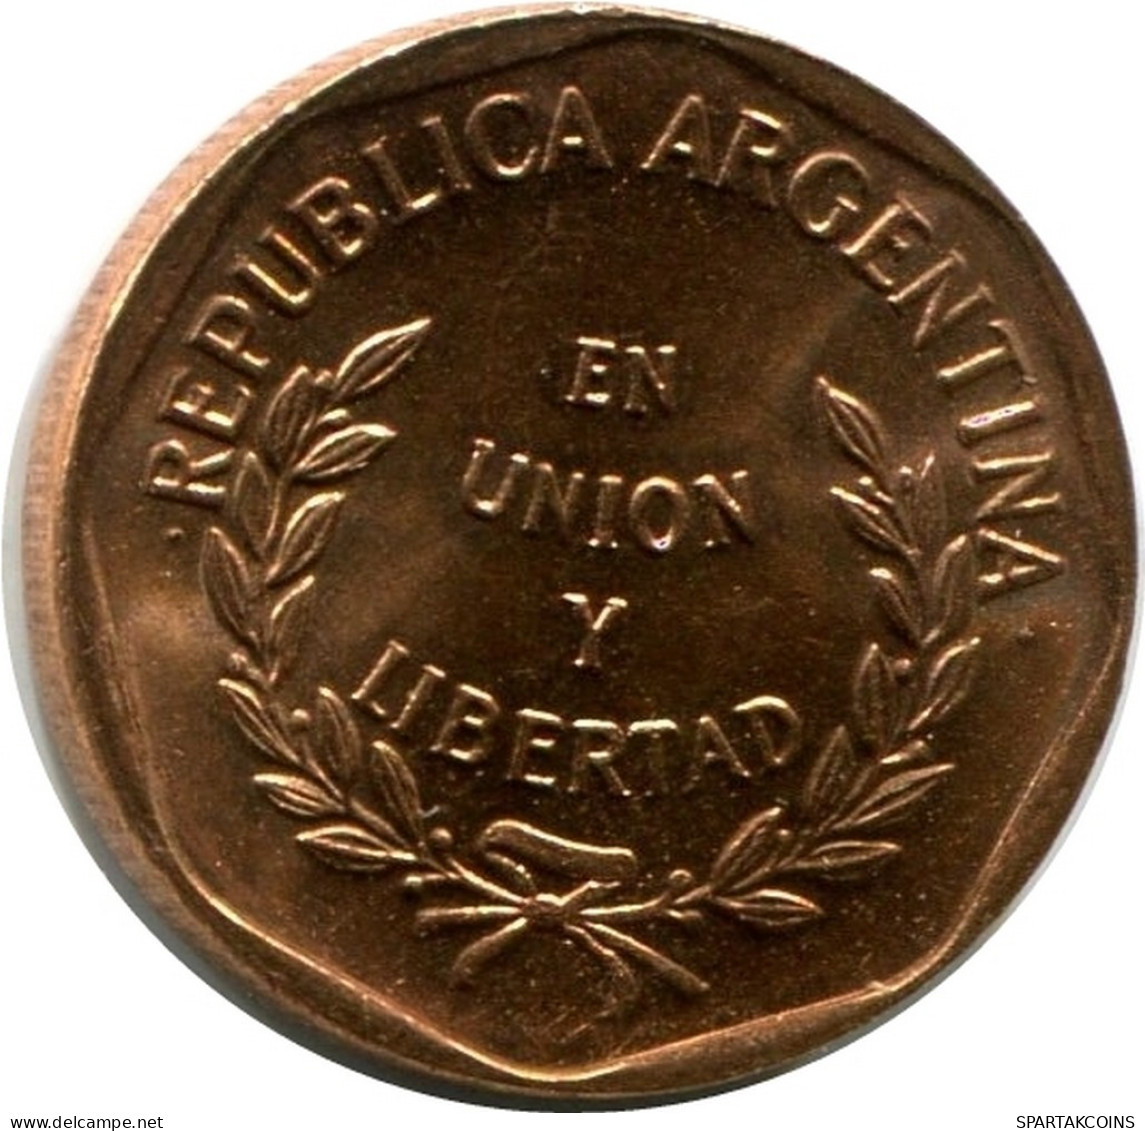 1 CENTAVO 1998 ARGENTINIEN ARGENTINA Münze UNC #M10082.D.A - Argentina